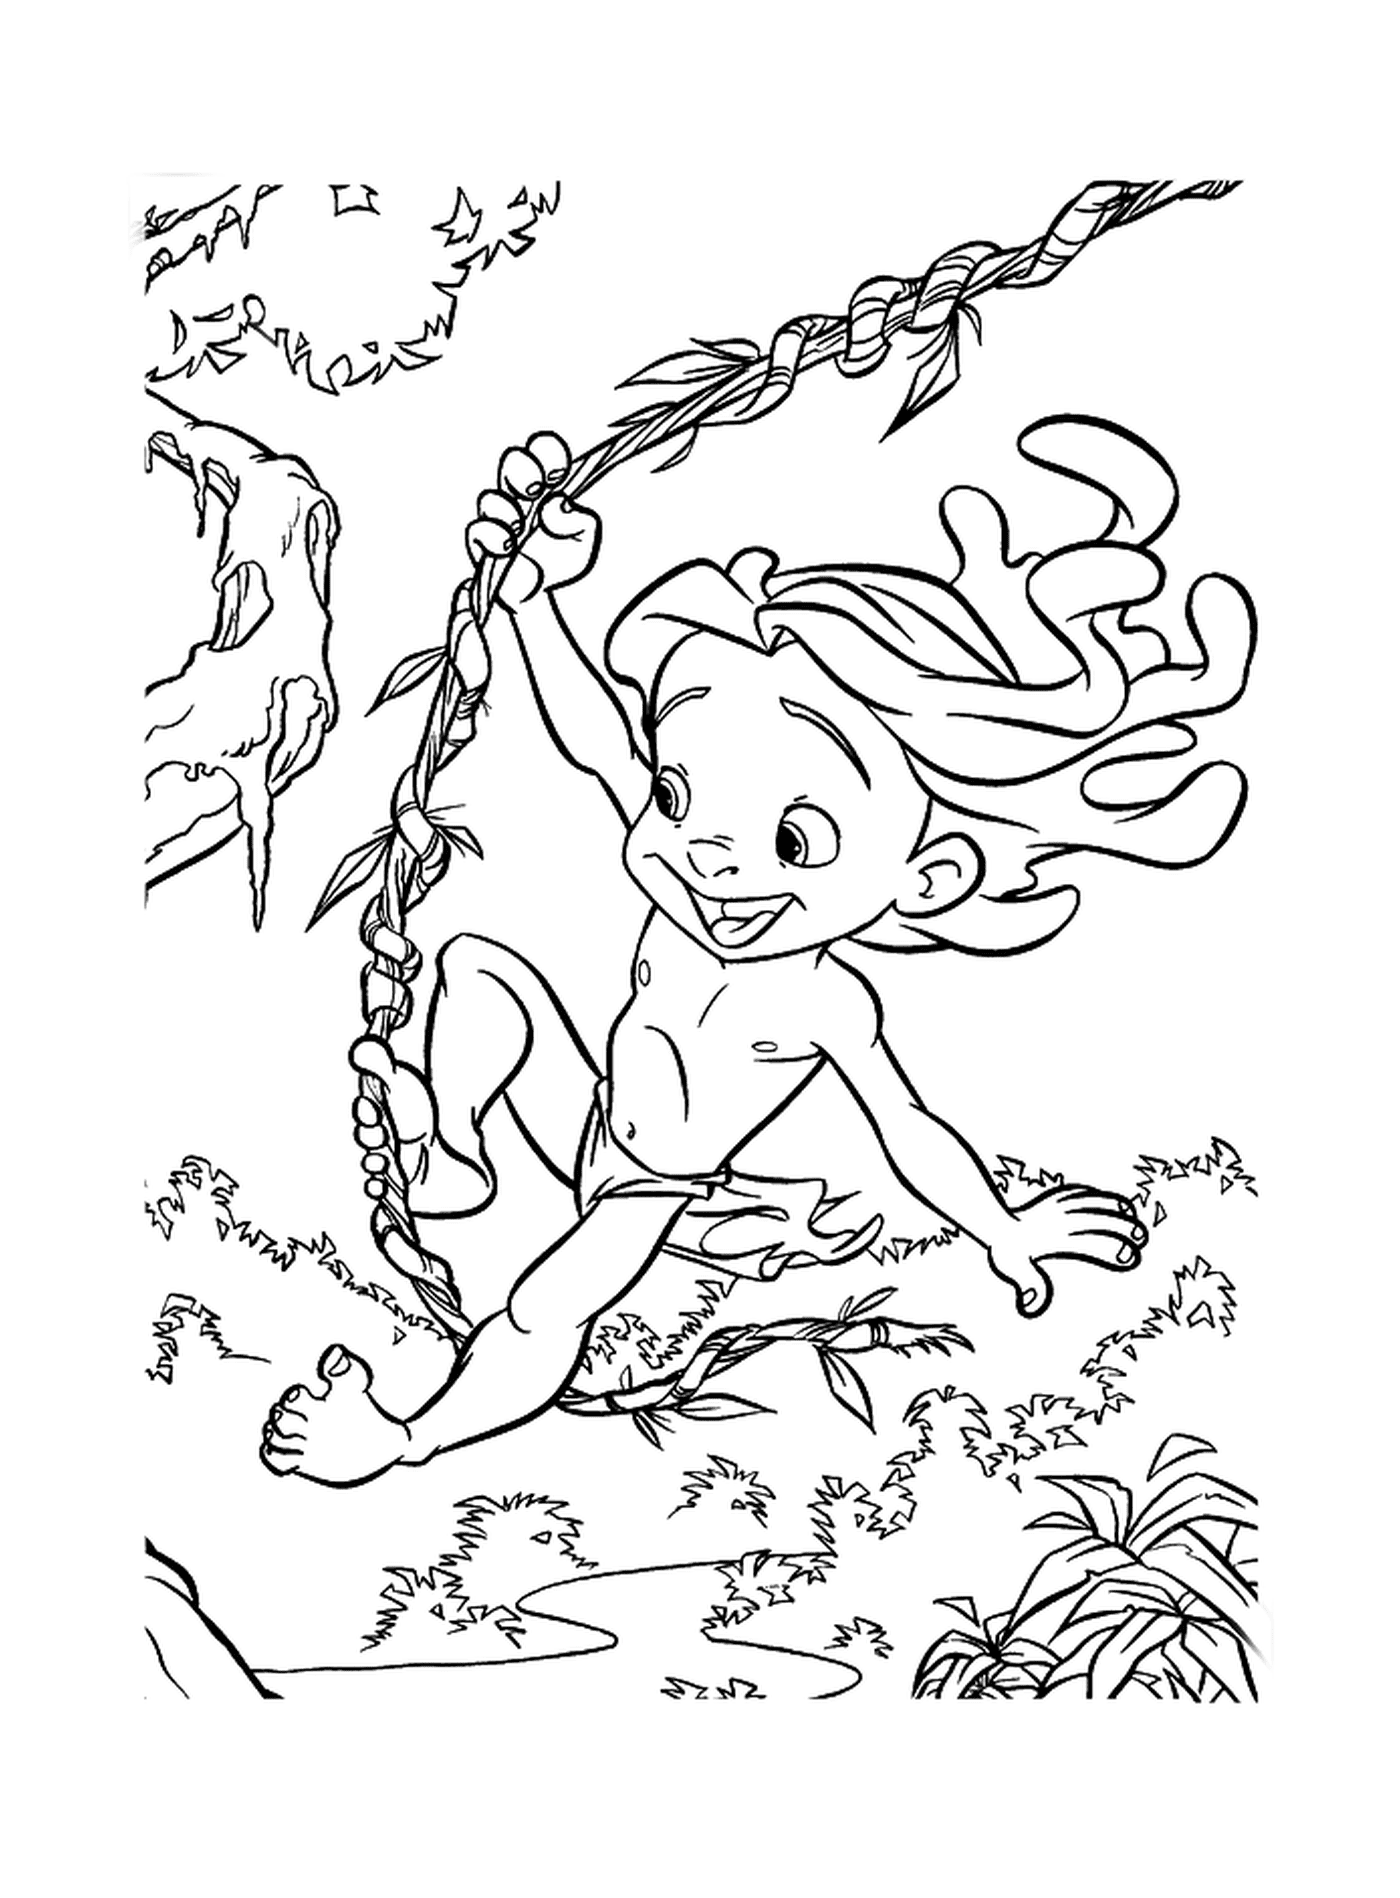   Enfant qui se balance sur une branche d'arbre 